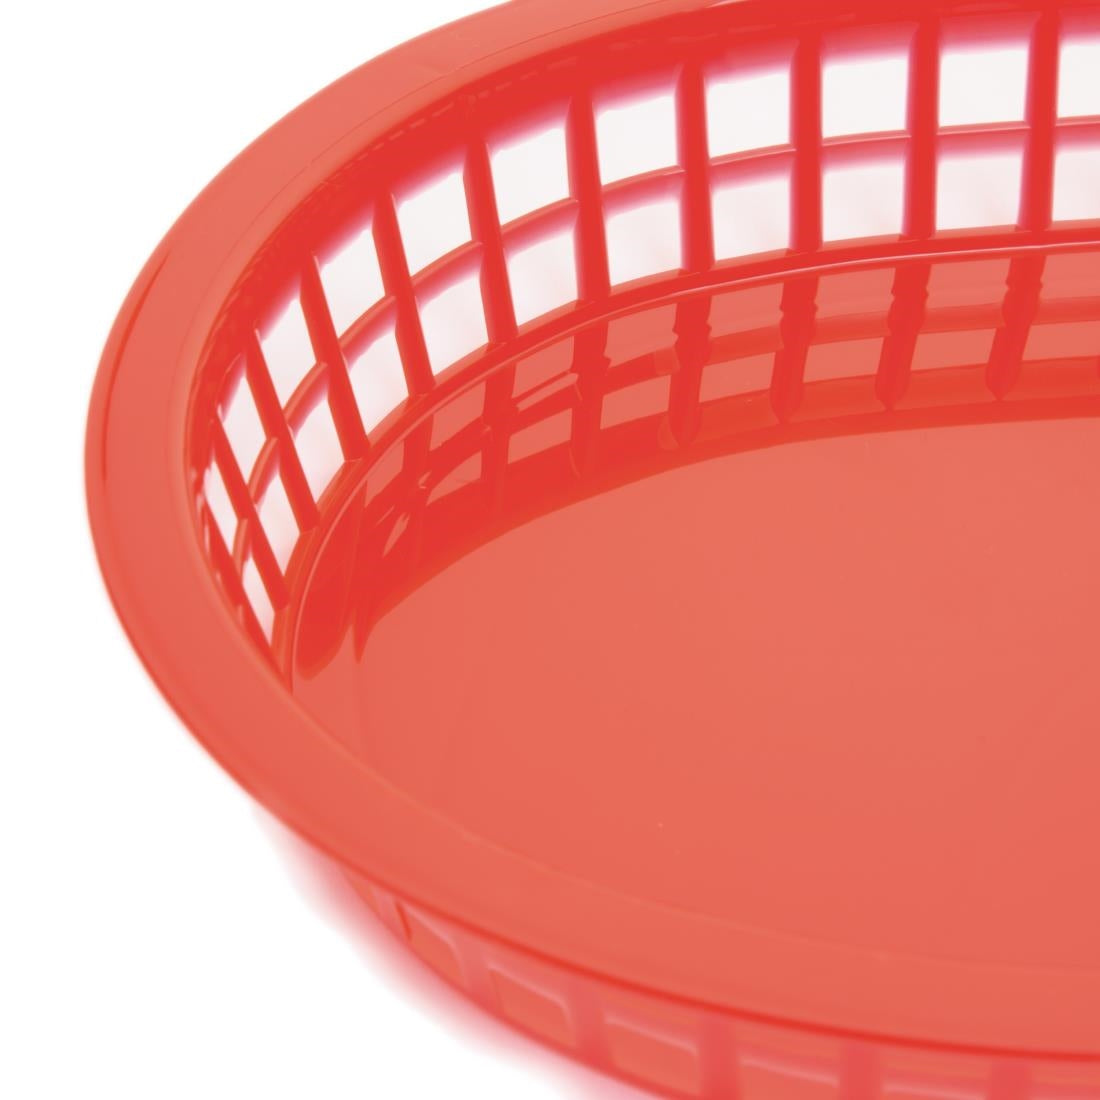 Oval Polypropylene Food Basket (Pack of 6)